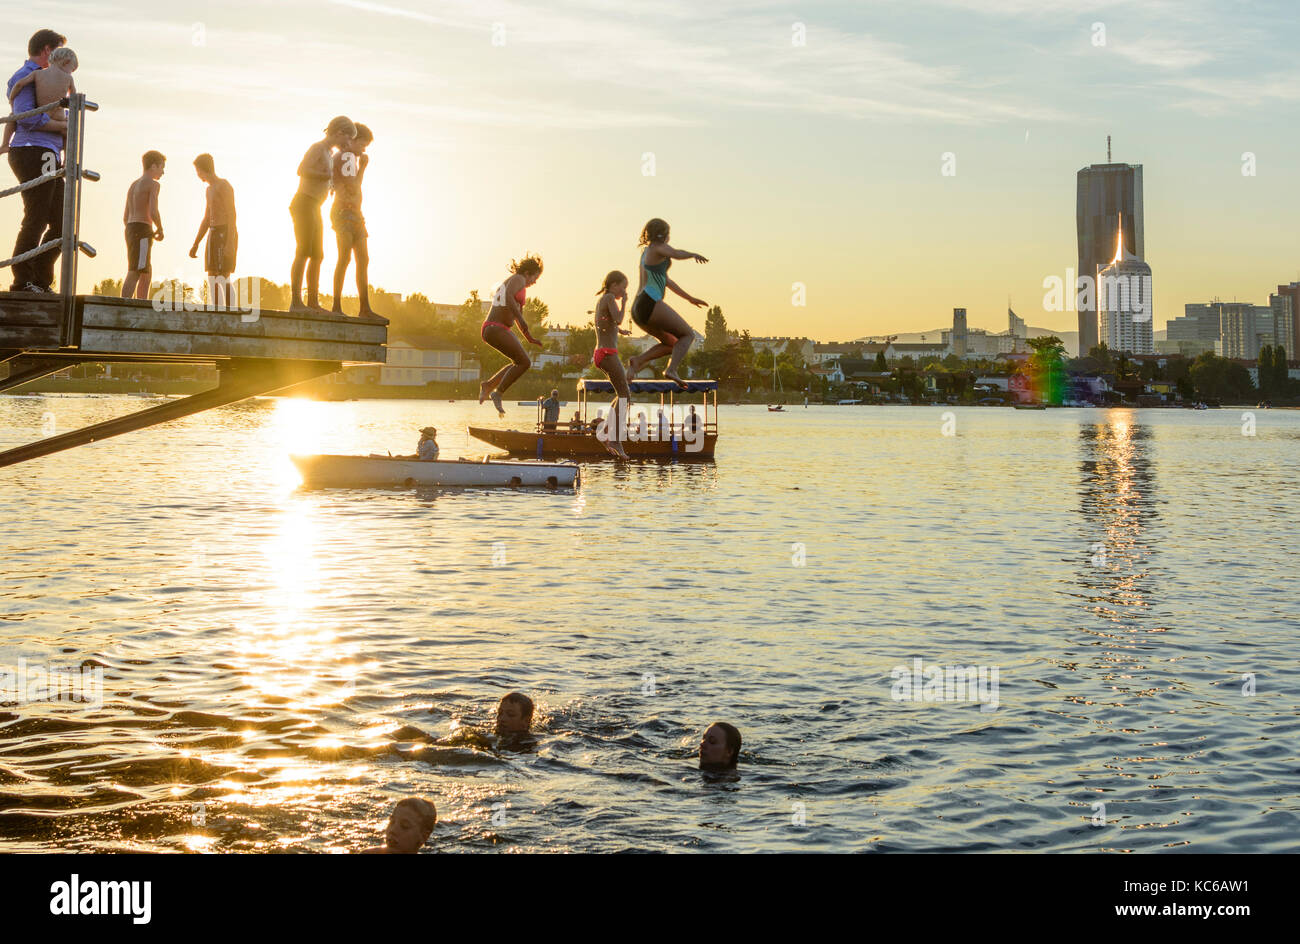 Bambini, bambini saltare in acqua, fiume Alte Donau (Vecchio Danubio), skyline di Donaucity, DC Tower 1, barche, Wien, Vienna, 22. Donaustadt, Wien, Austria Foto Stock